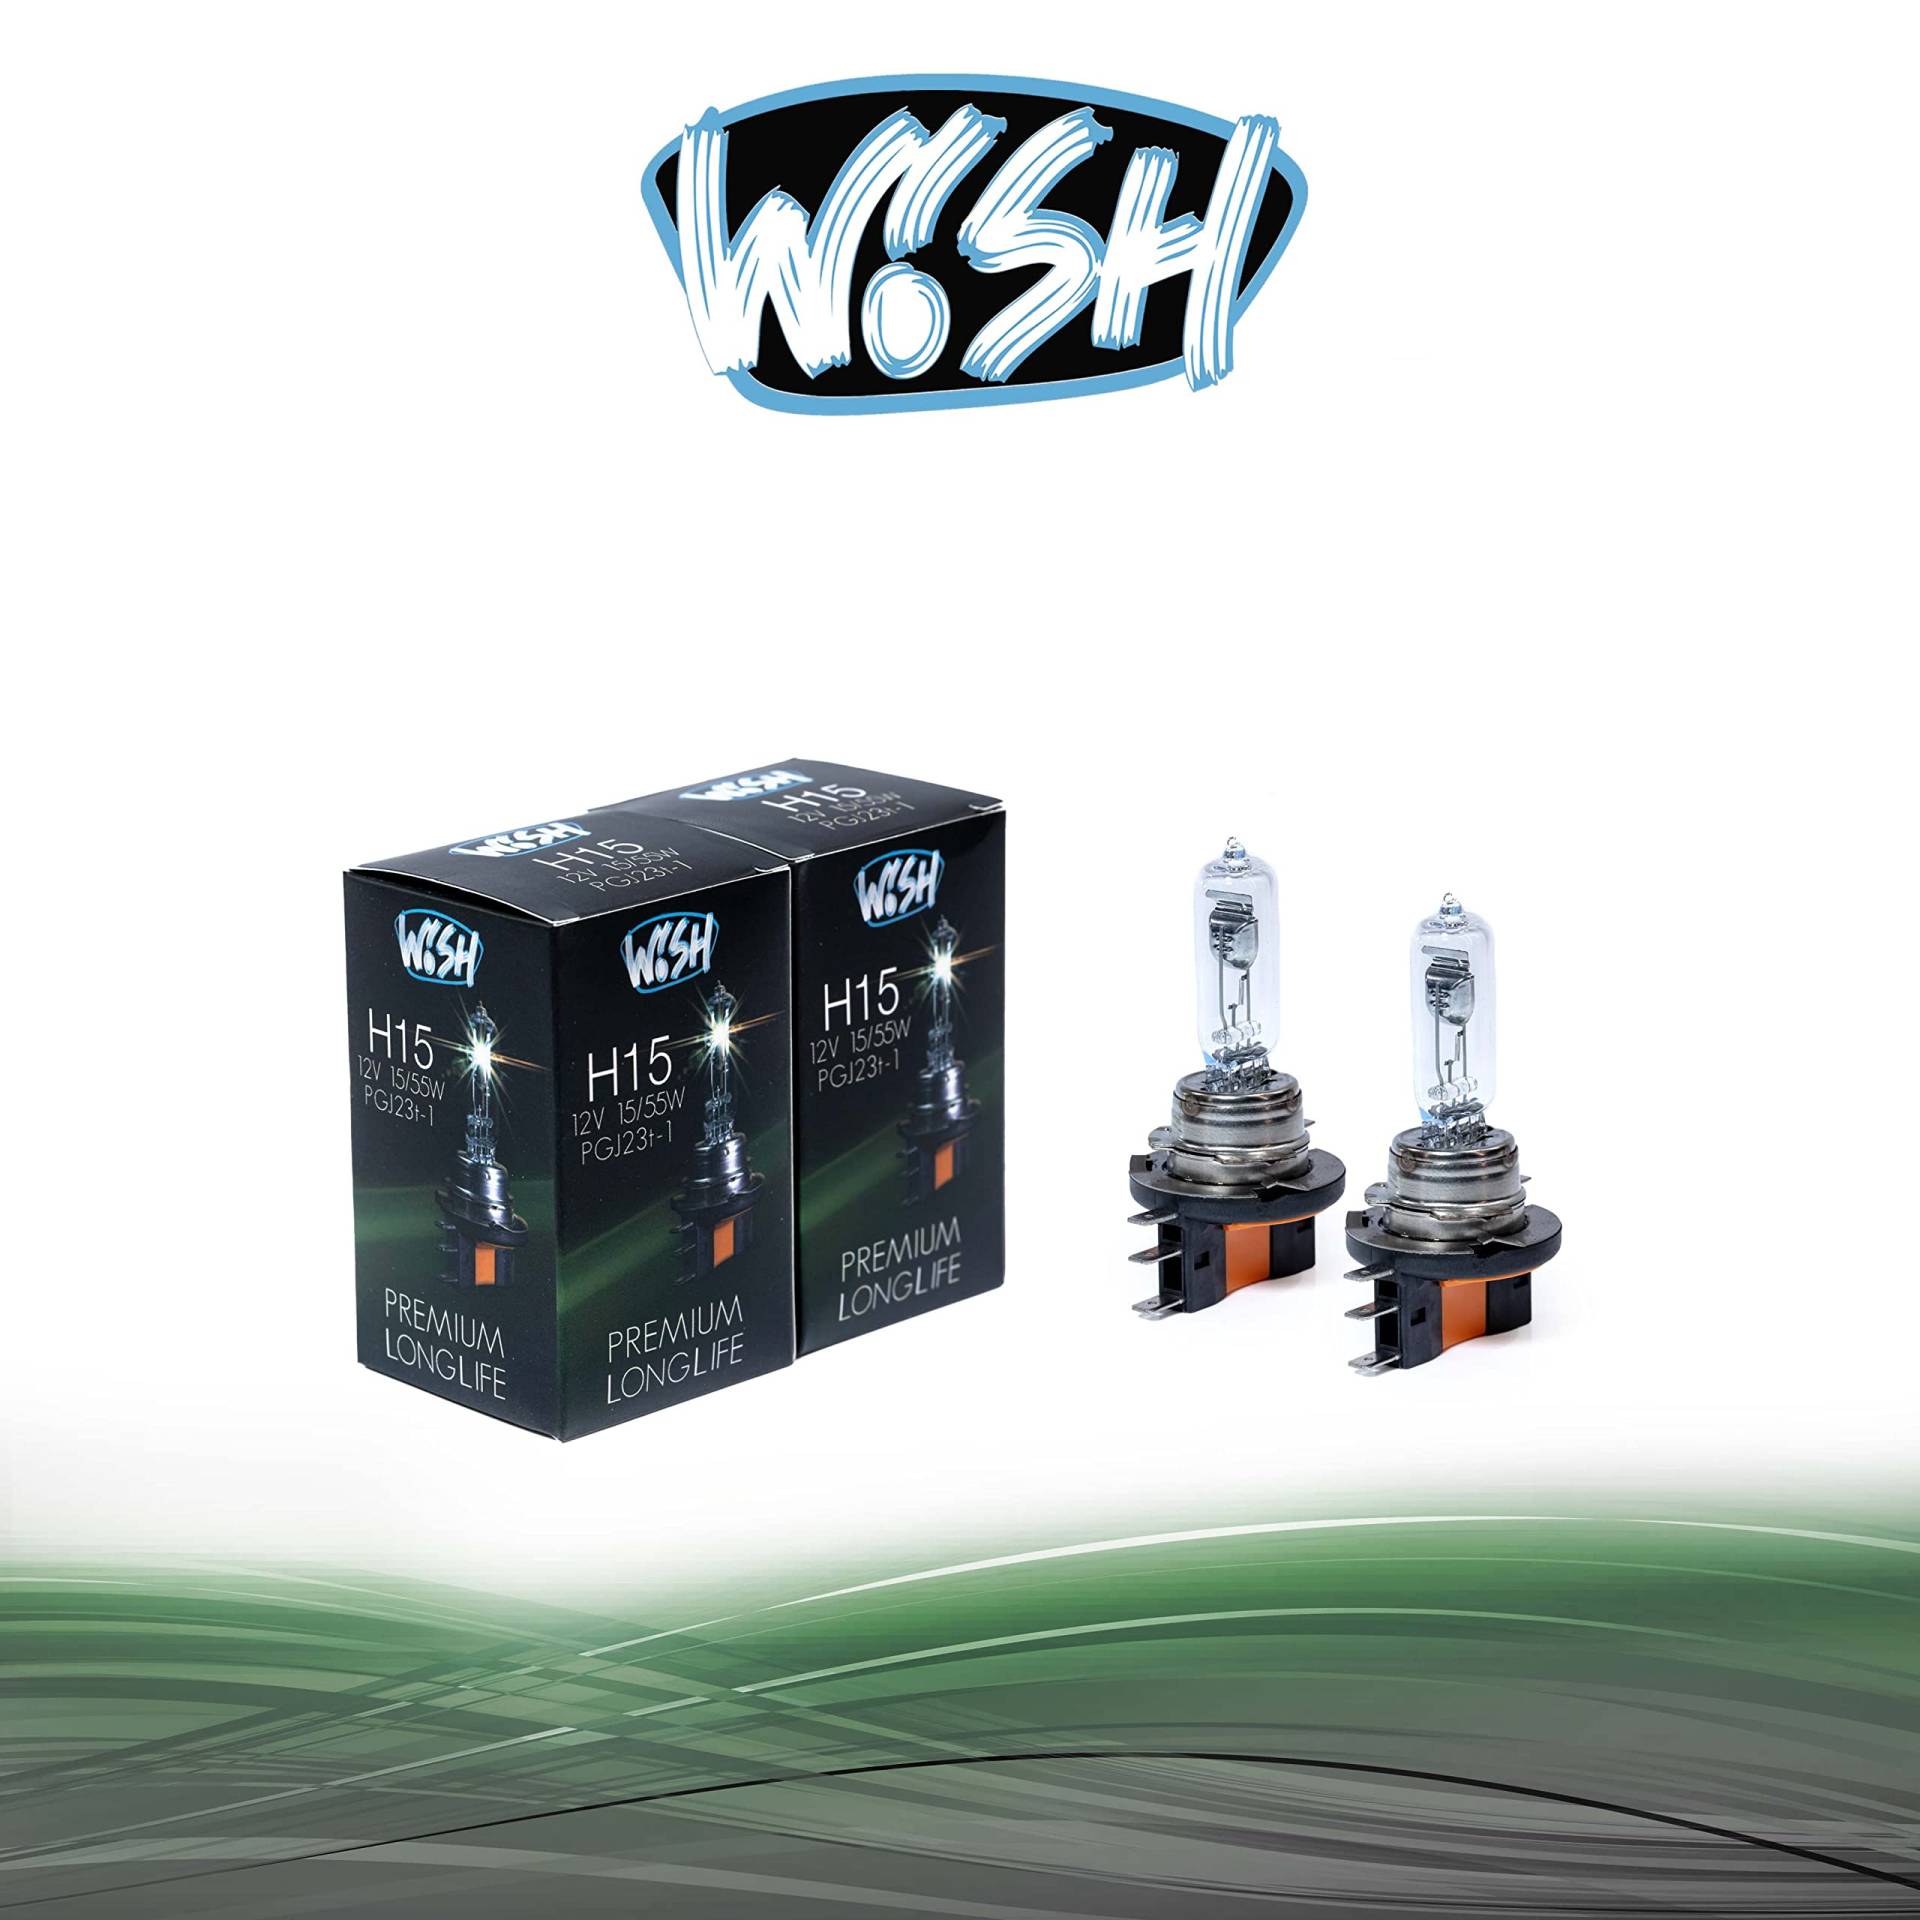 Wish® H15 LongLife 12V 15/55W PGJ23t-1 Halogen Glühbirnen Lampen Scheinwerferlampen (H15 LongLife Doppelpack) von Wish